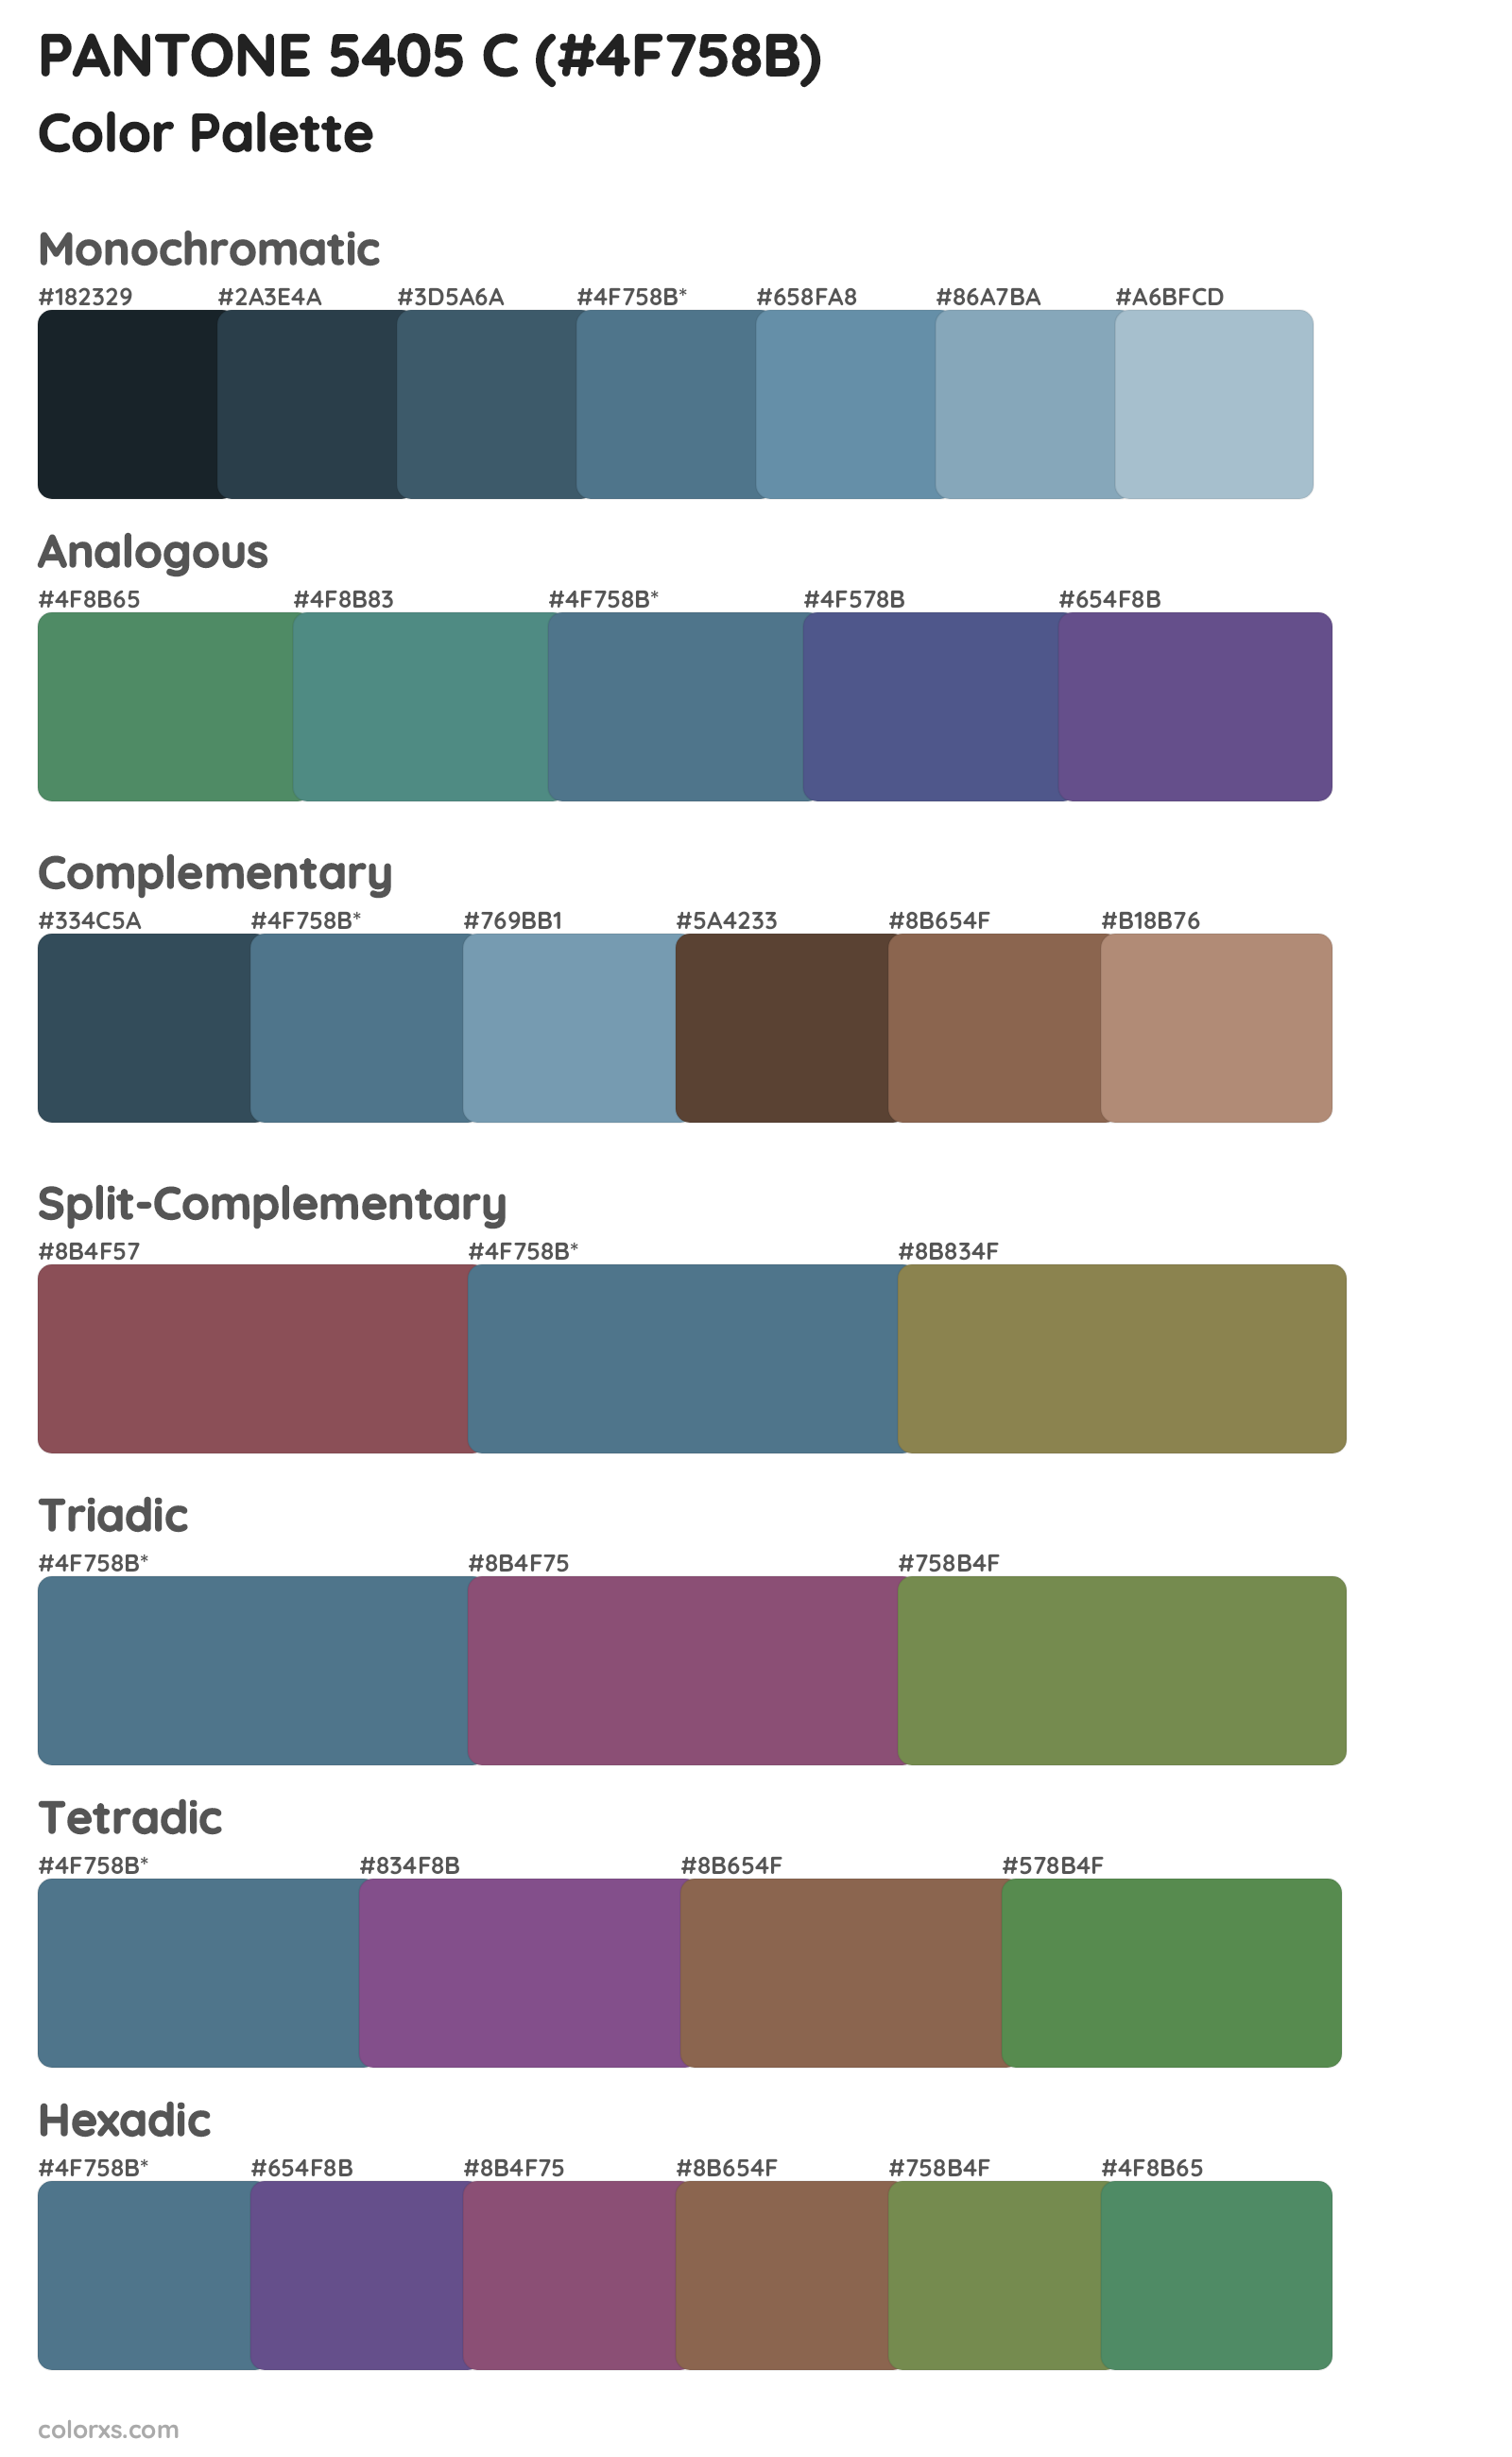 PANTONE 5405 C Color Scheme Palettes